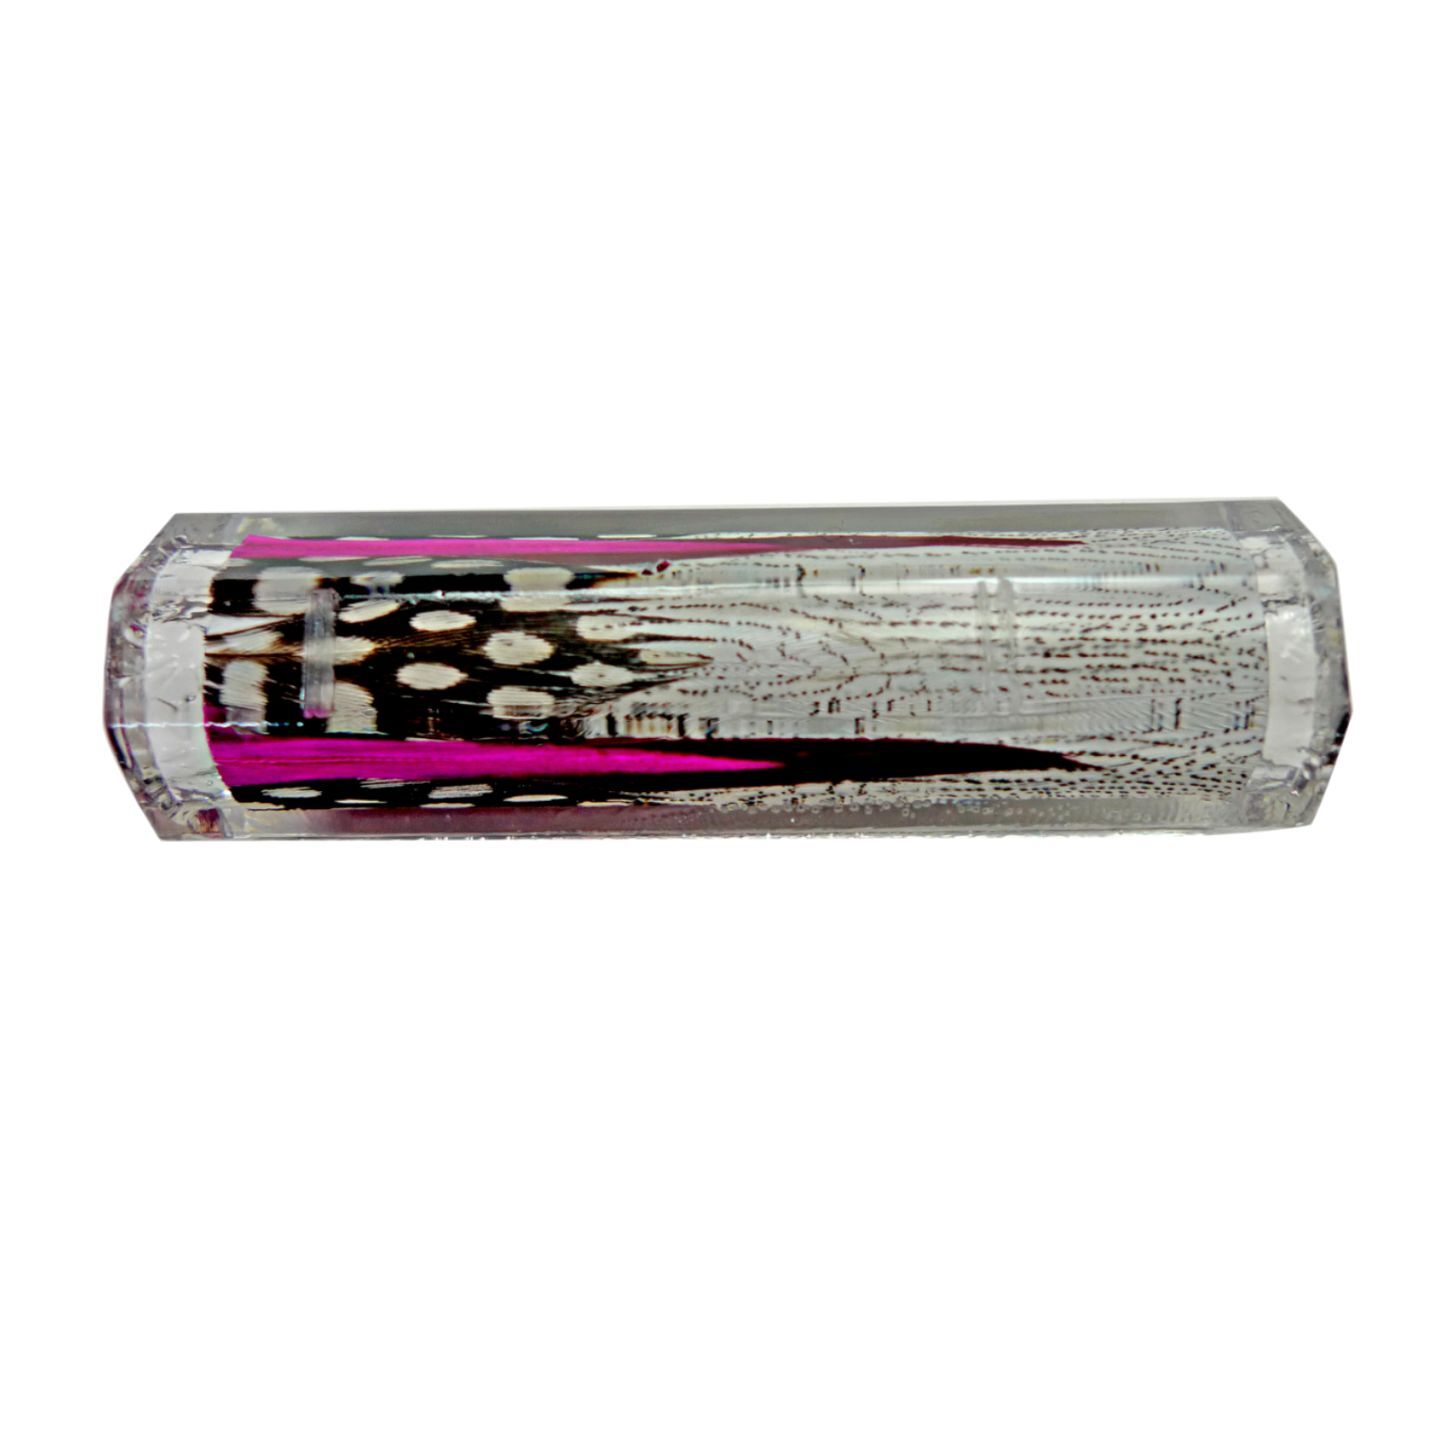 Sierra Twist Feather Pen Blanks - Flower